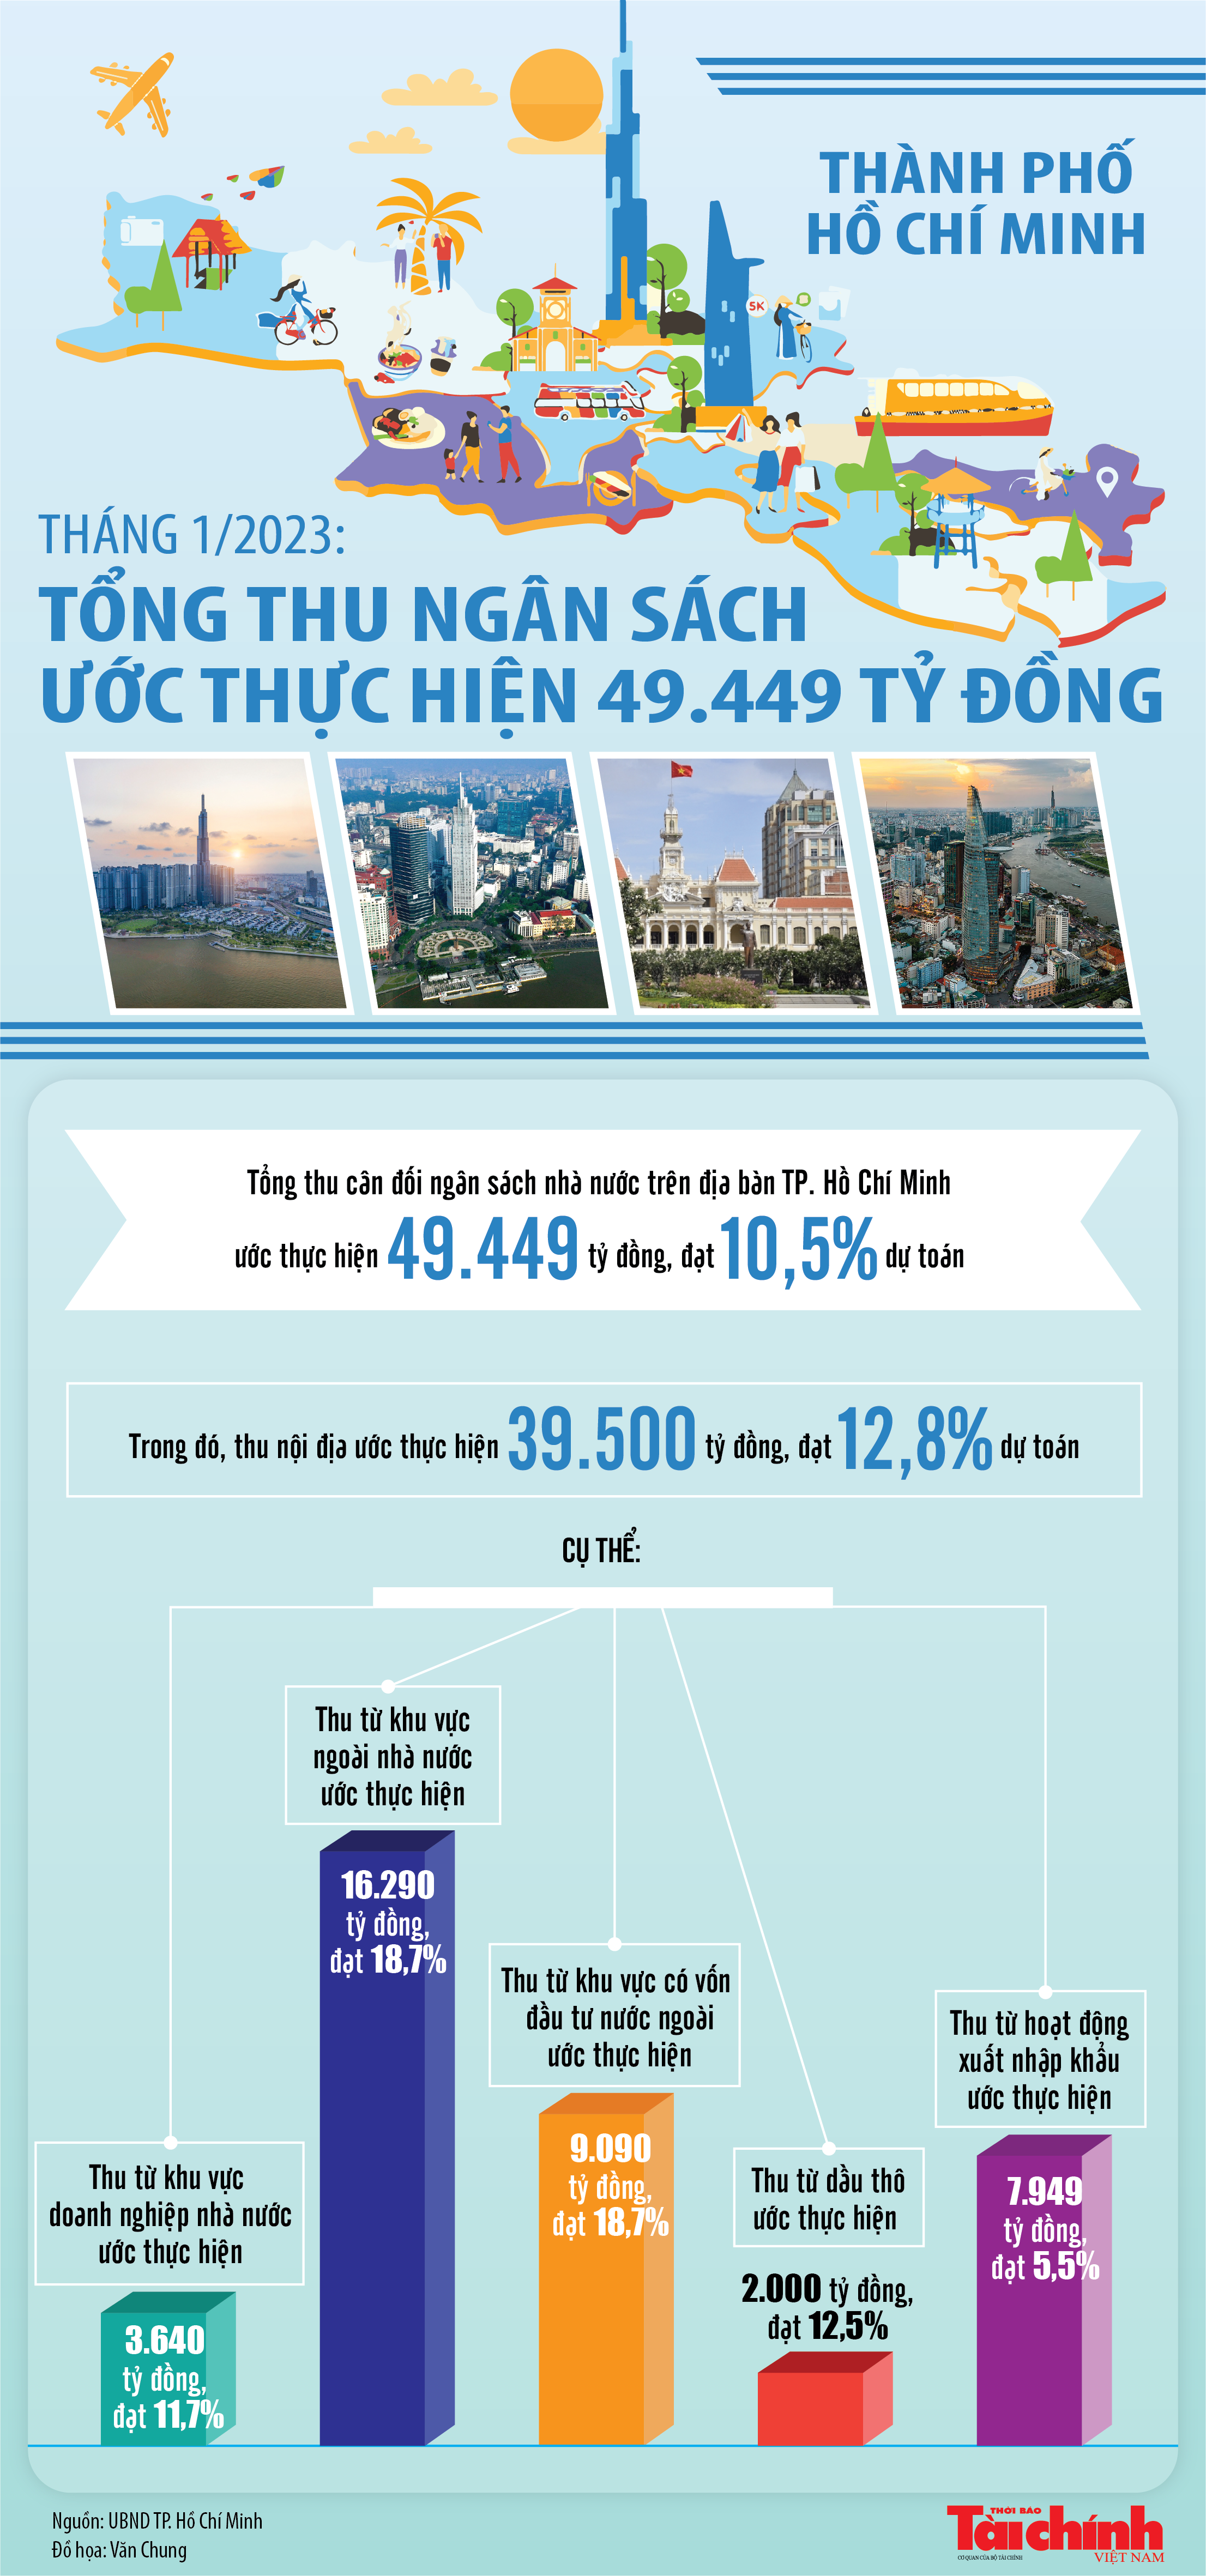 TP. Hồ Chí Minh: Tổng thu ngân sách tháng 1/2023 ước đạt 49.449 tỷ đồng